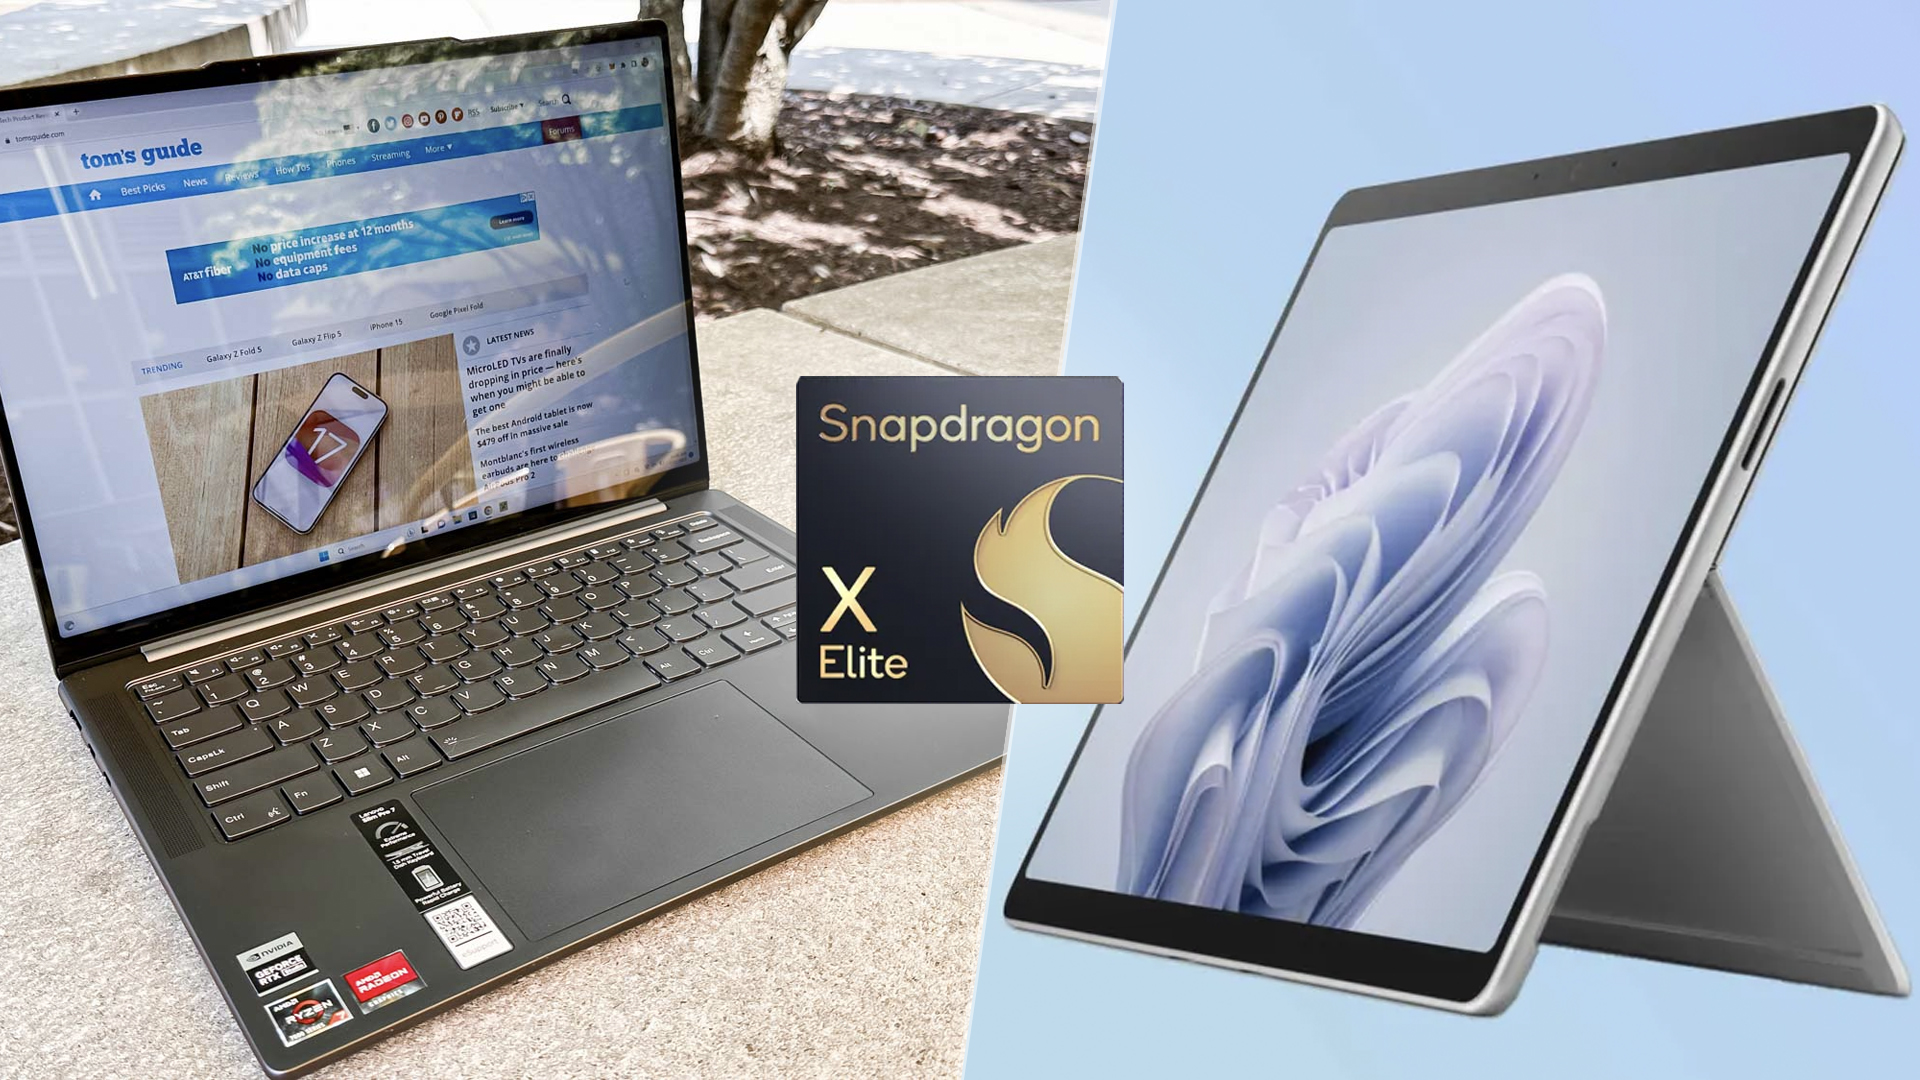 高通 Snapdragon X Elite 笔记本电脑